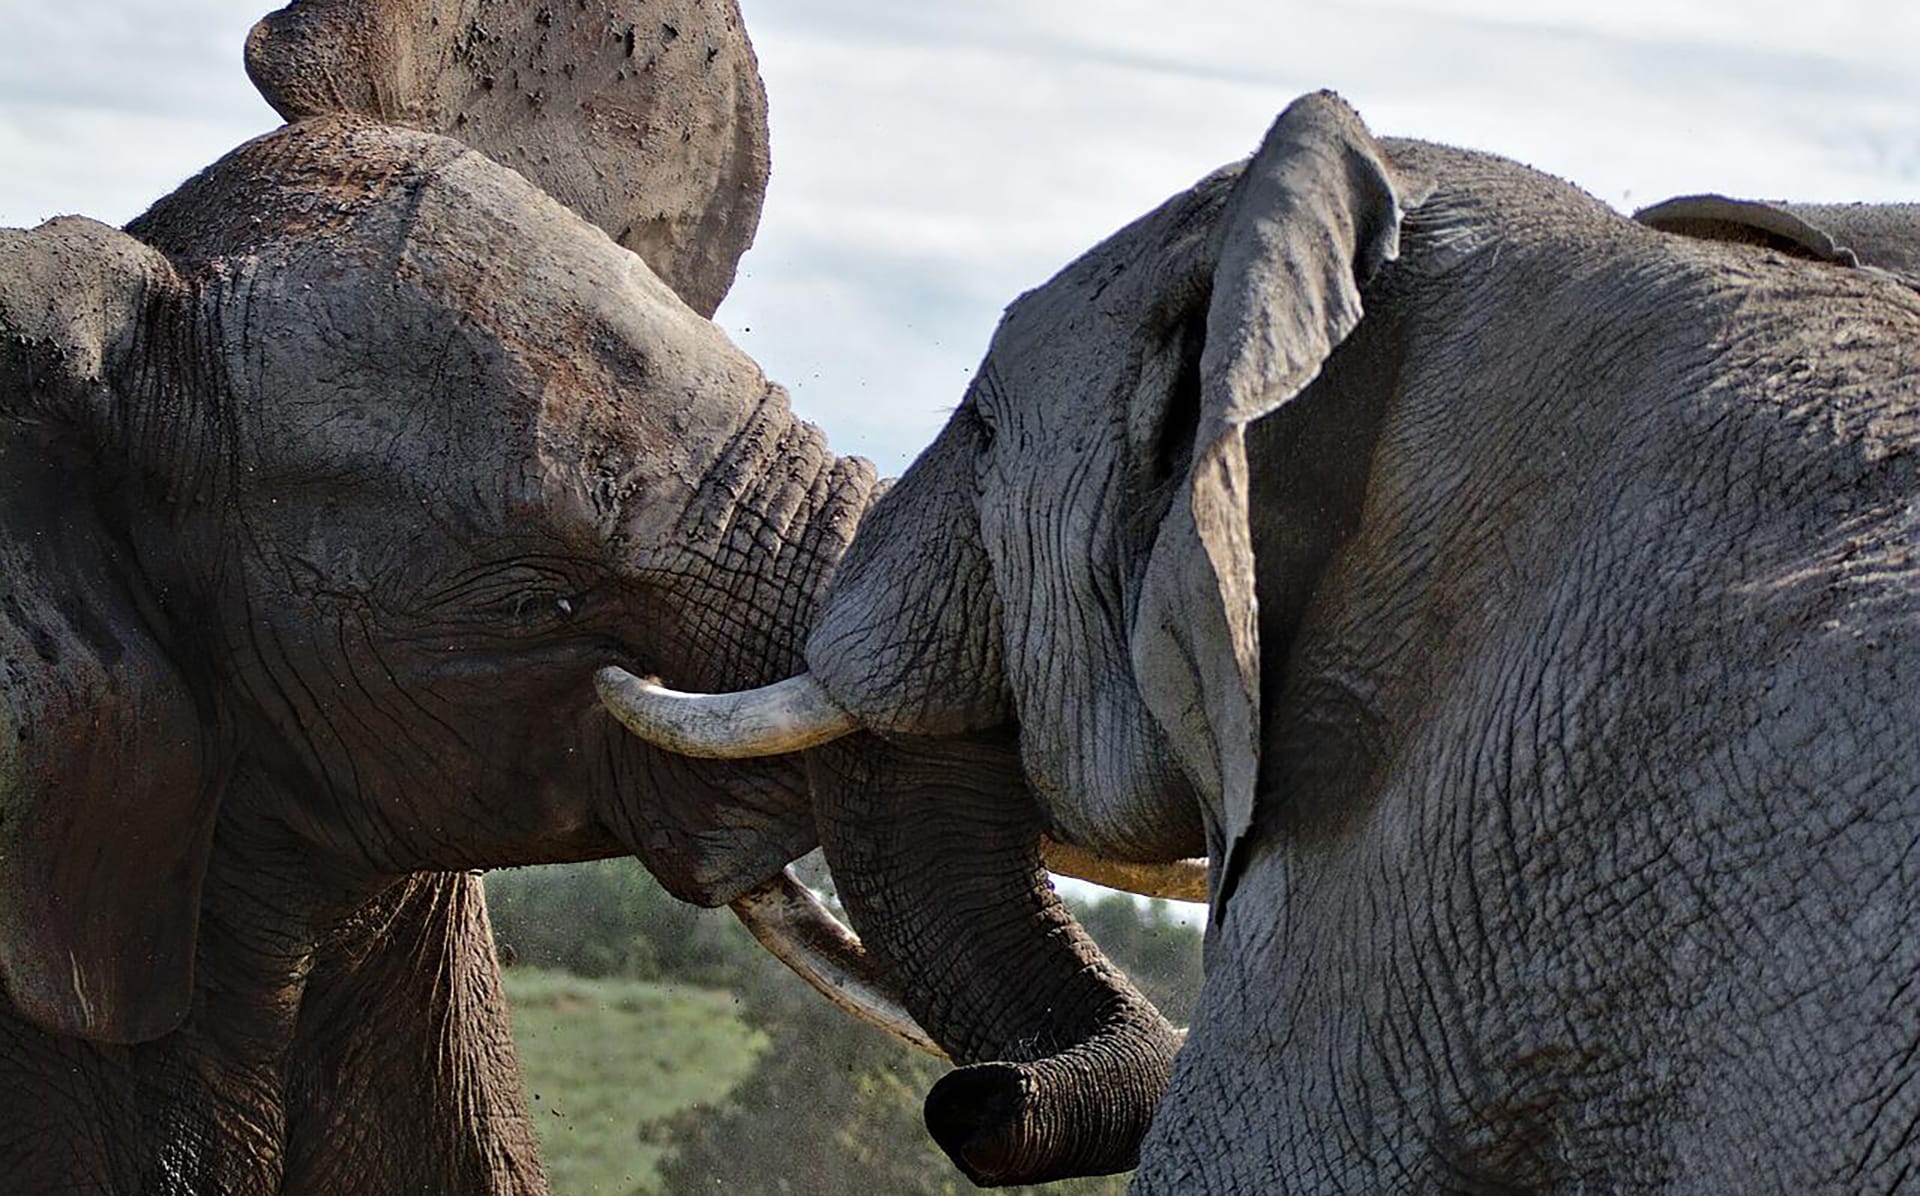 Two elephants fighting